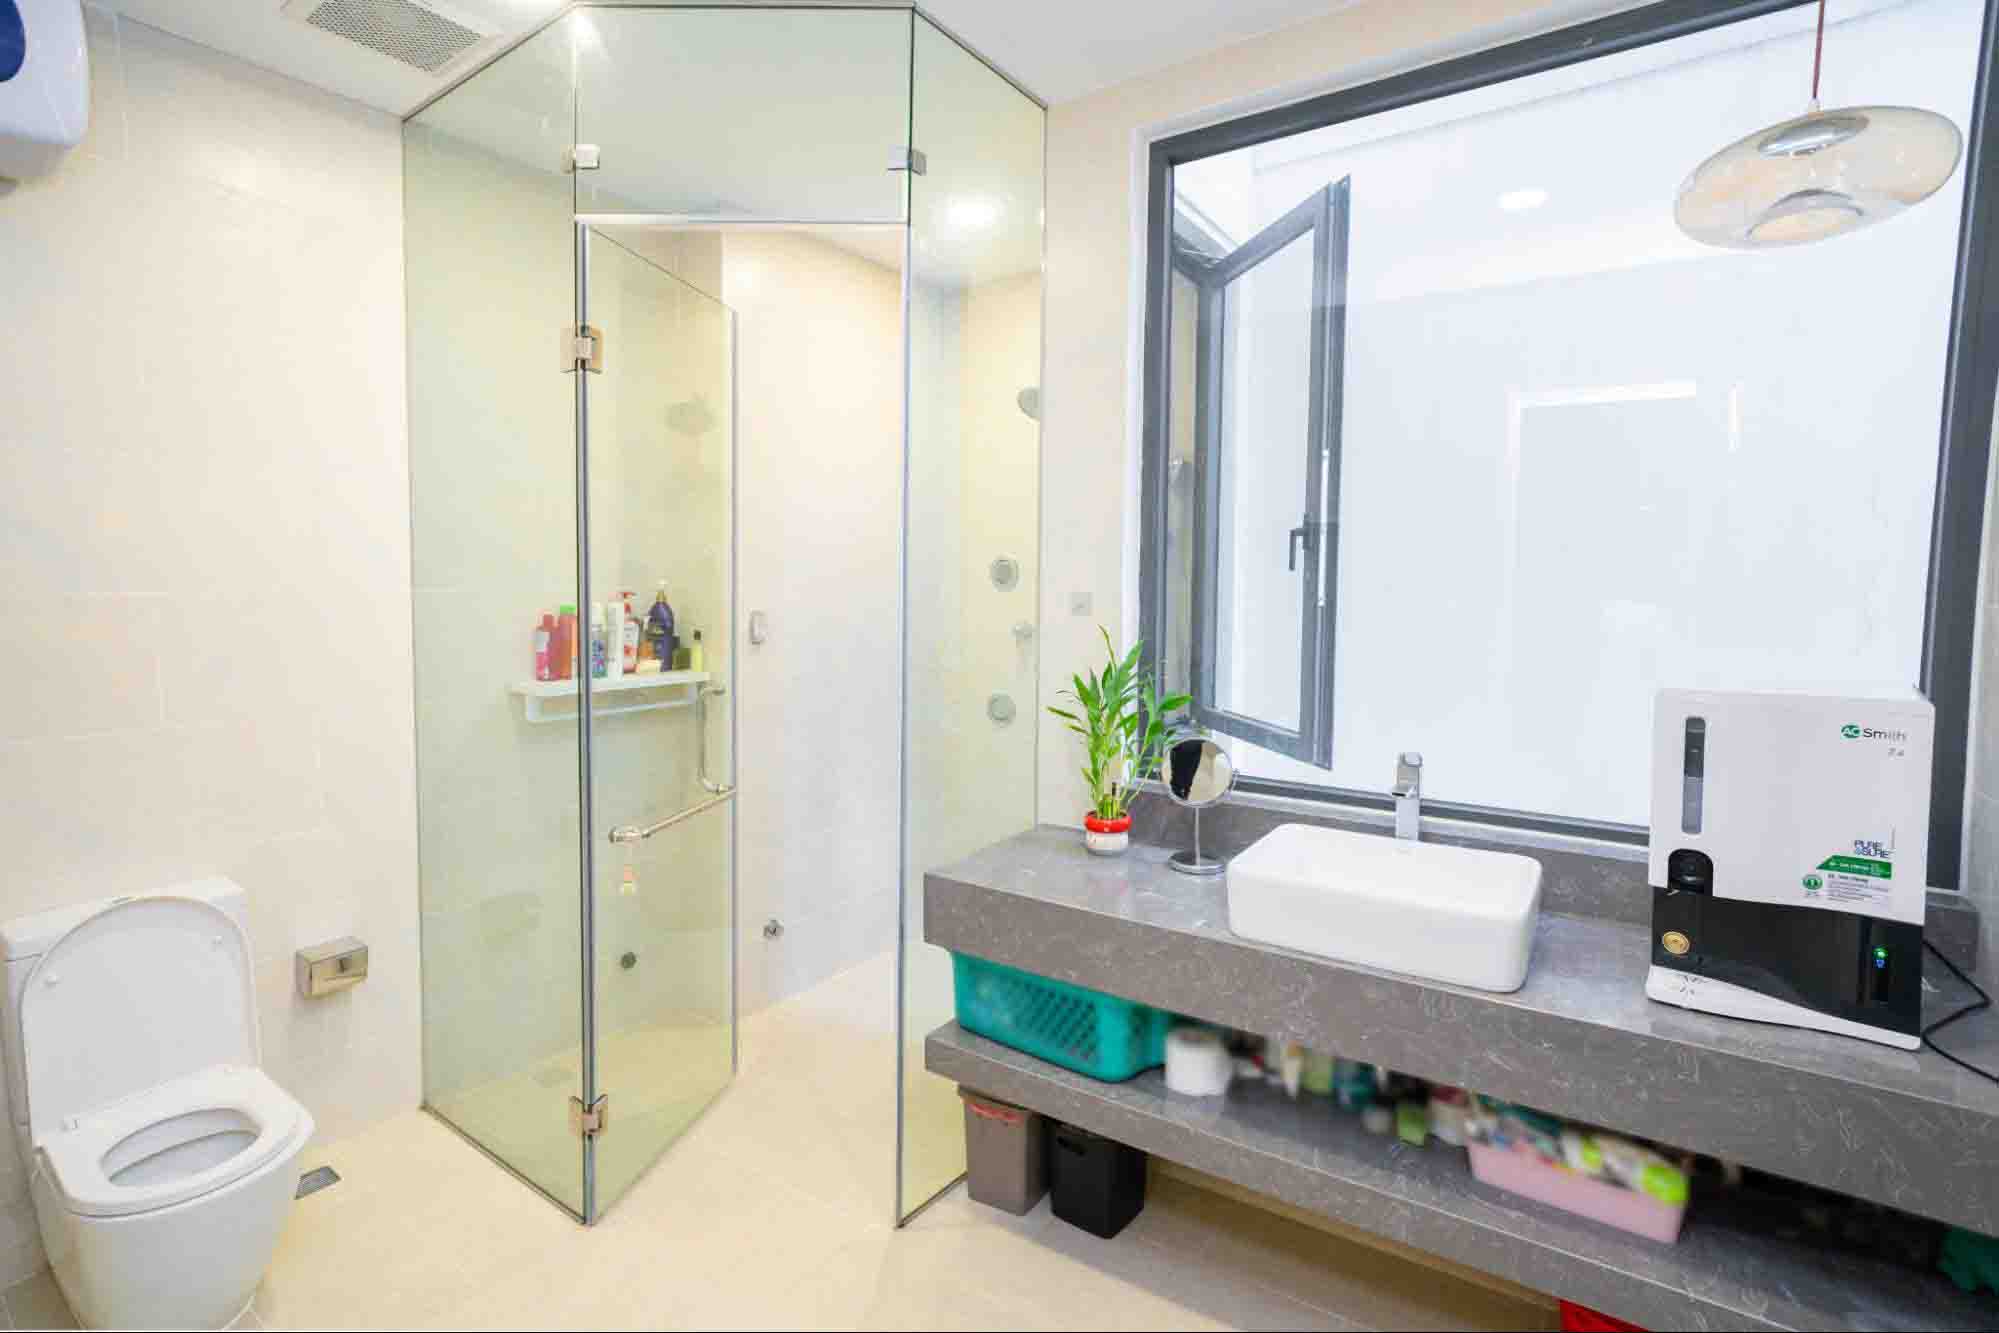 Phòng vệ sinh tiện nghi với những món đồ nội thất hiện đại mang màu trắng sáng, sạch sẽ và gọn gàng